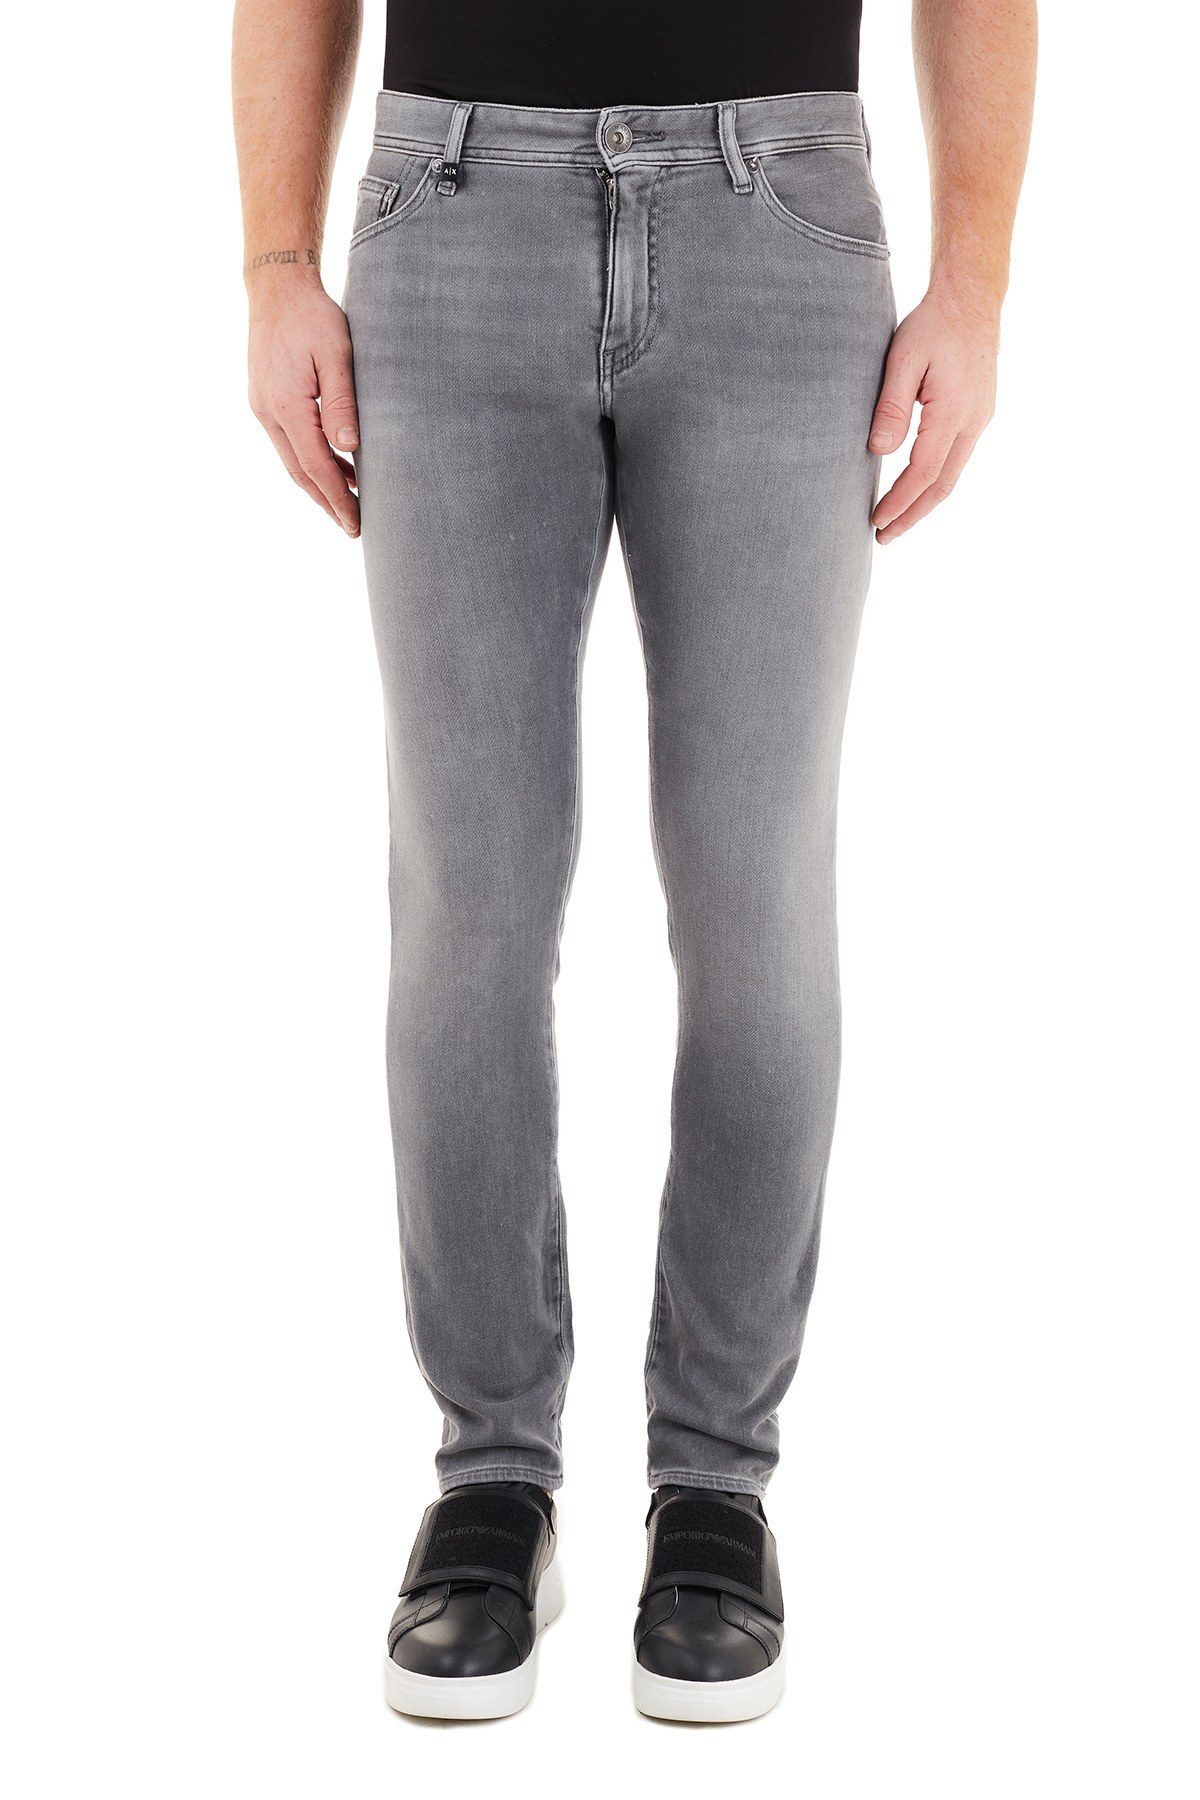 Armani Exchange Pamuklu Skinny Fit J14 Jeans Erkek Kot Pantolon 6HZJ14 Z5QMZ 0903 GRİ